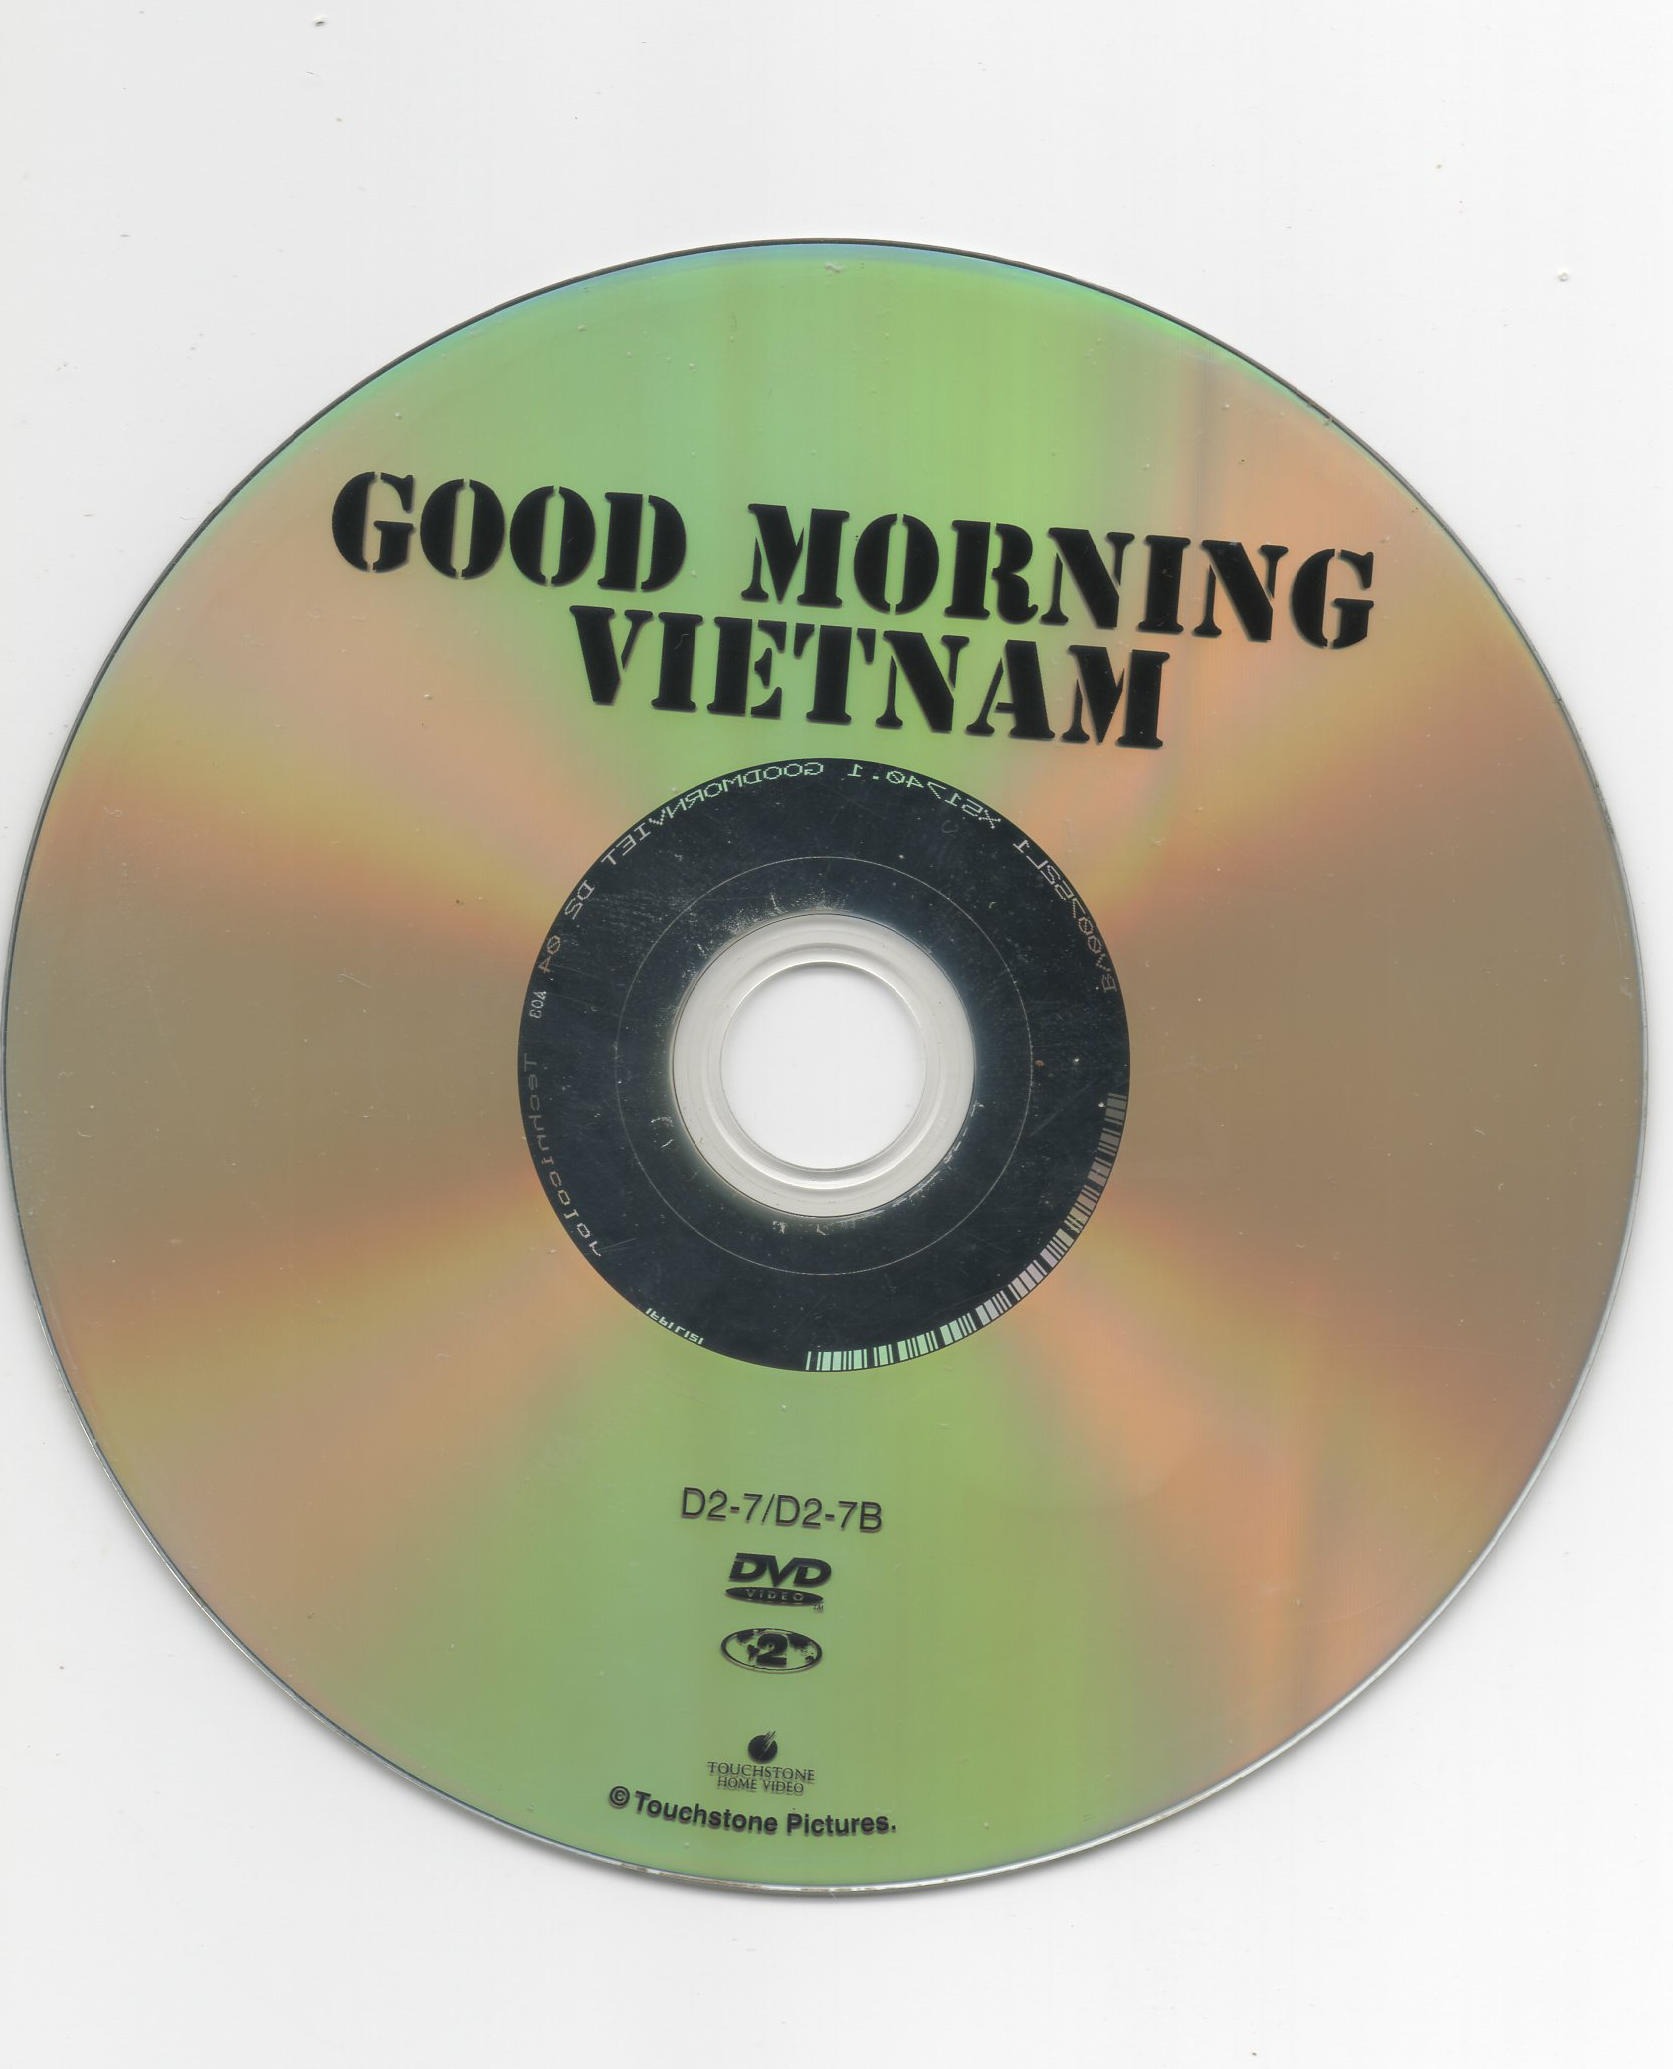 Good morning Vietnam v2